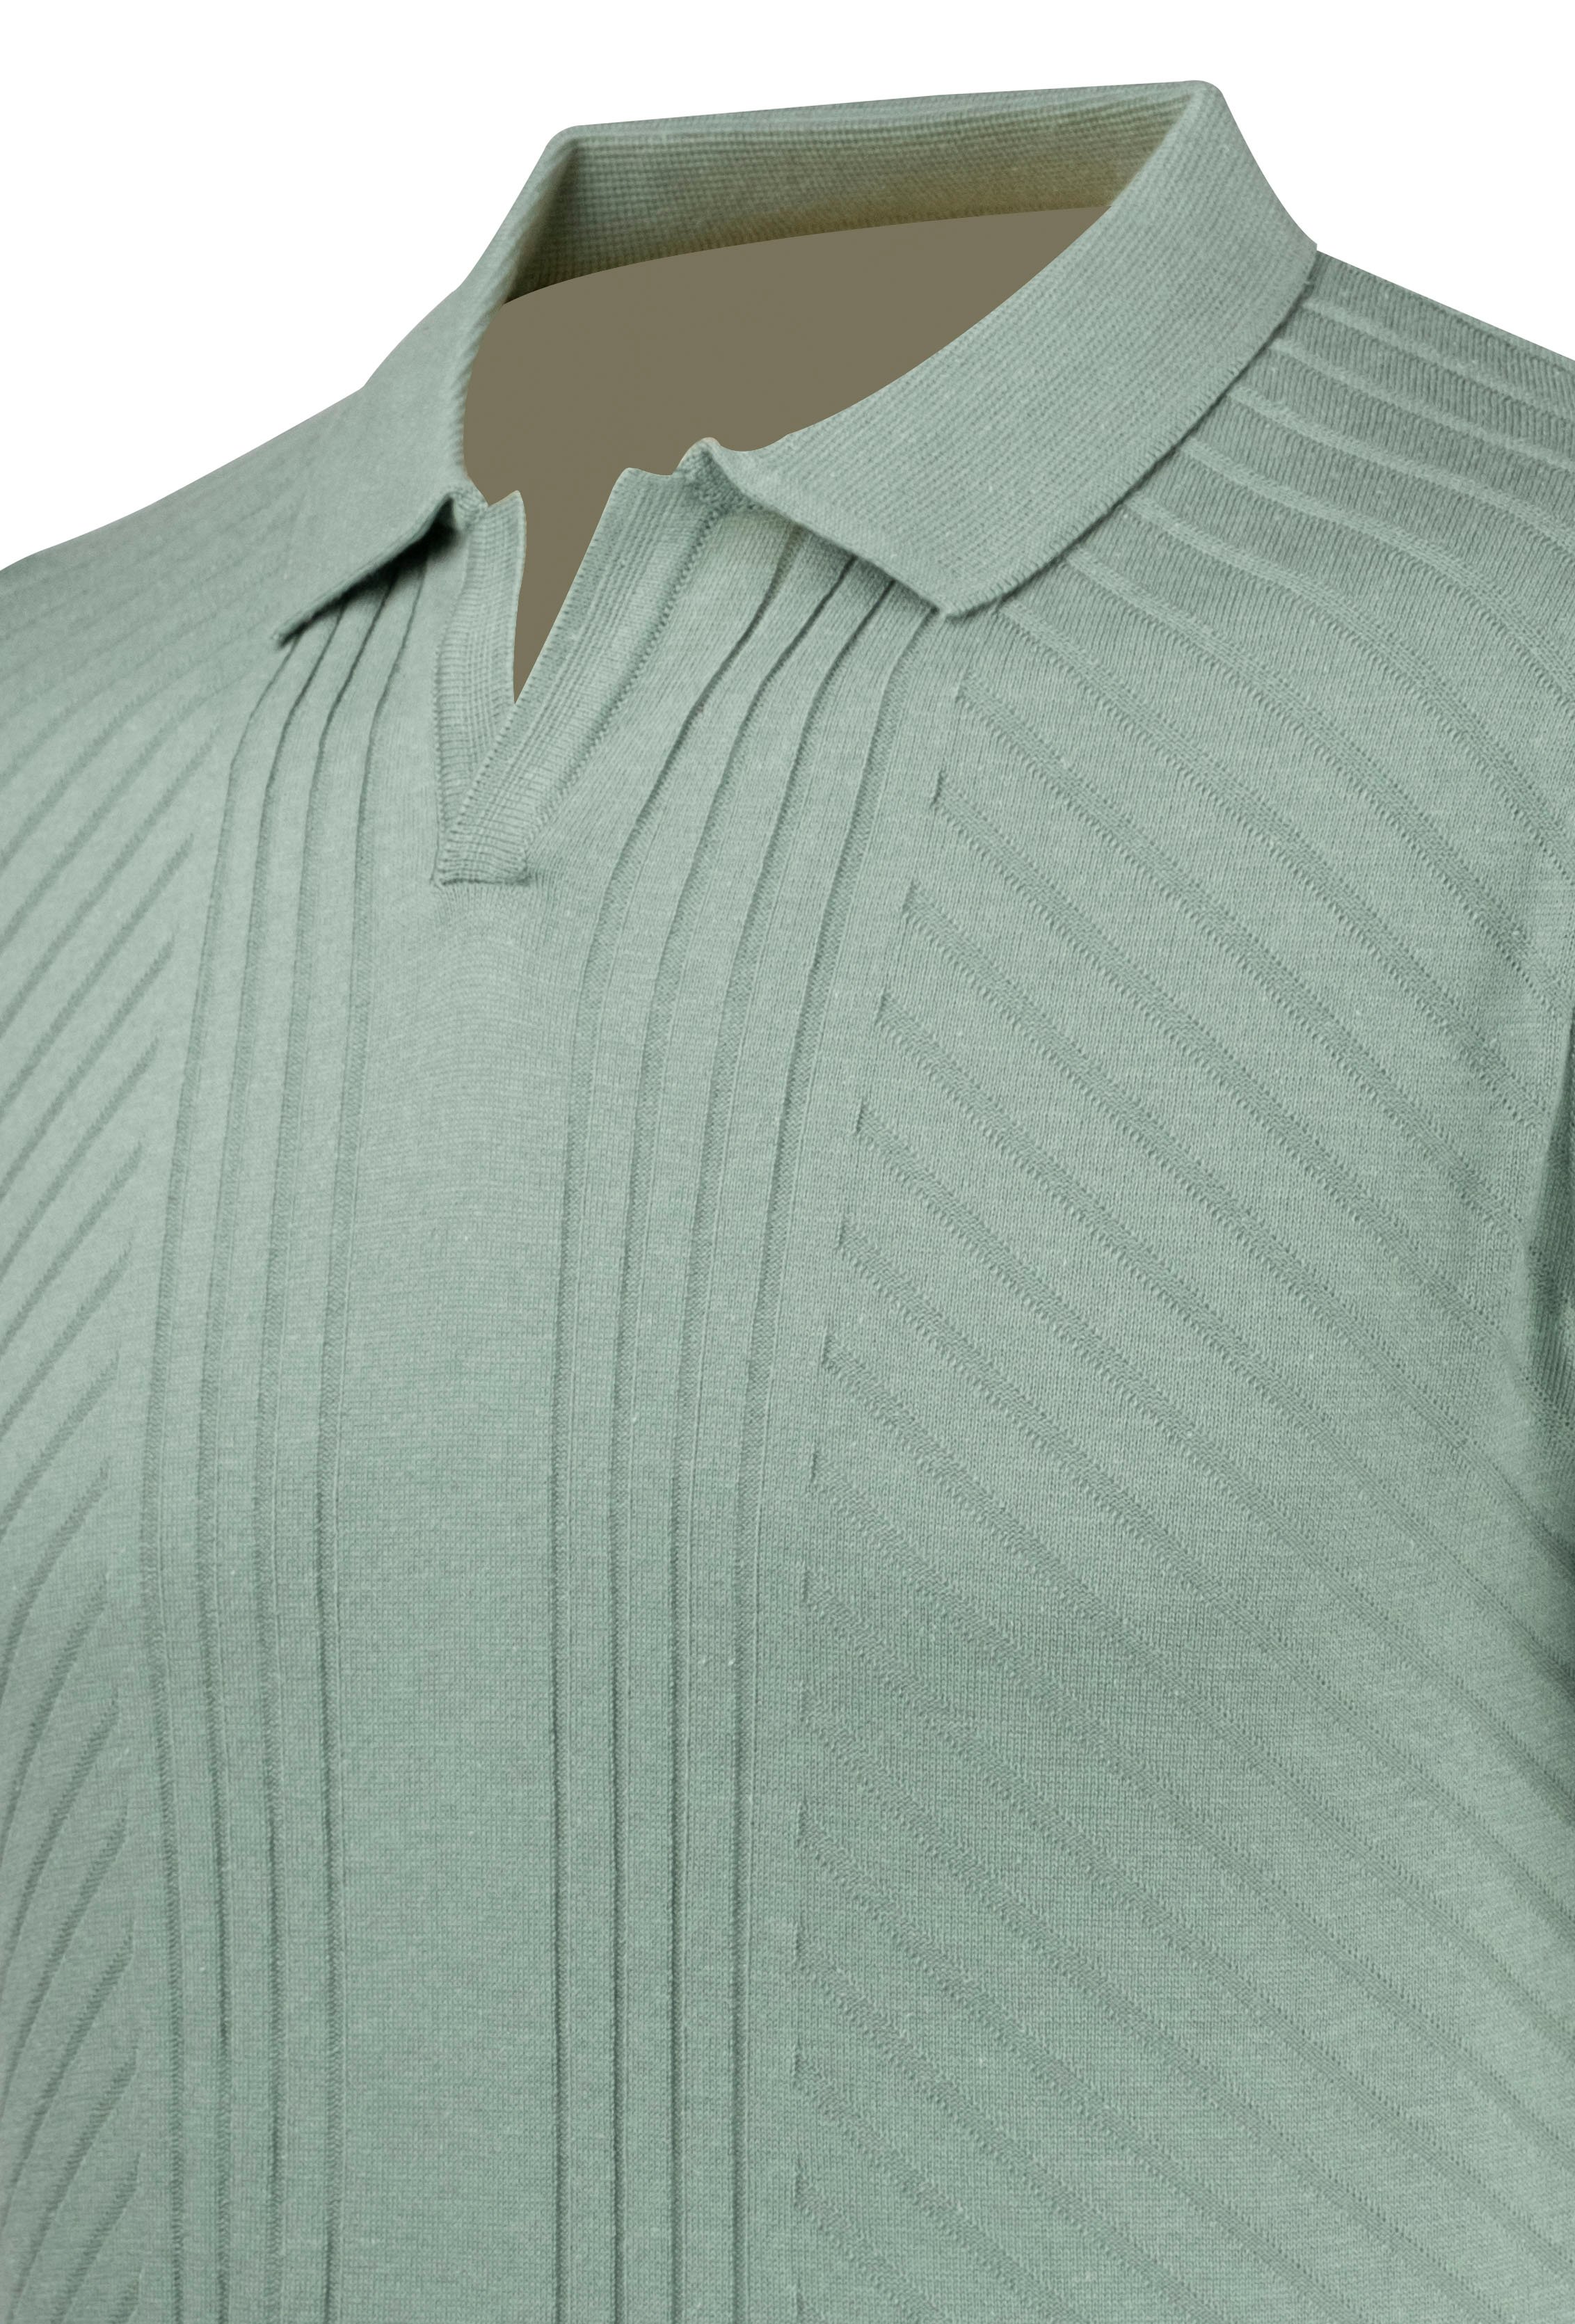 Erkek Yazlık Triko Tişört Kıvrılmaz Polo Yaka Regular Kalıp - SU YEŞİLİ